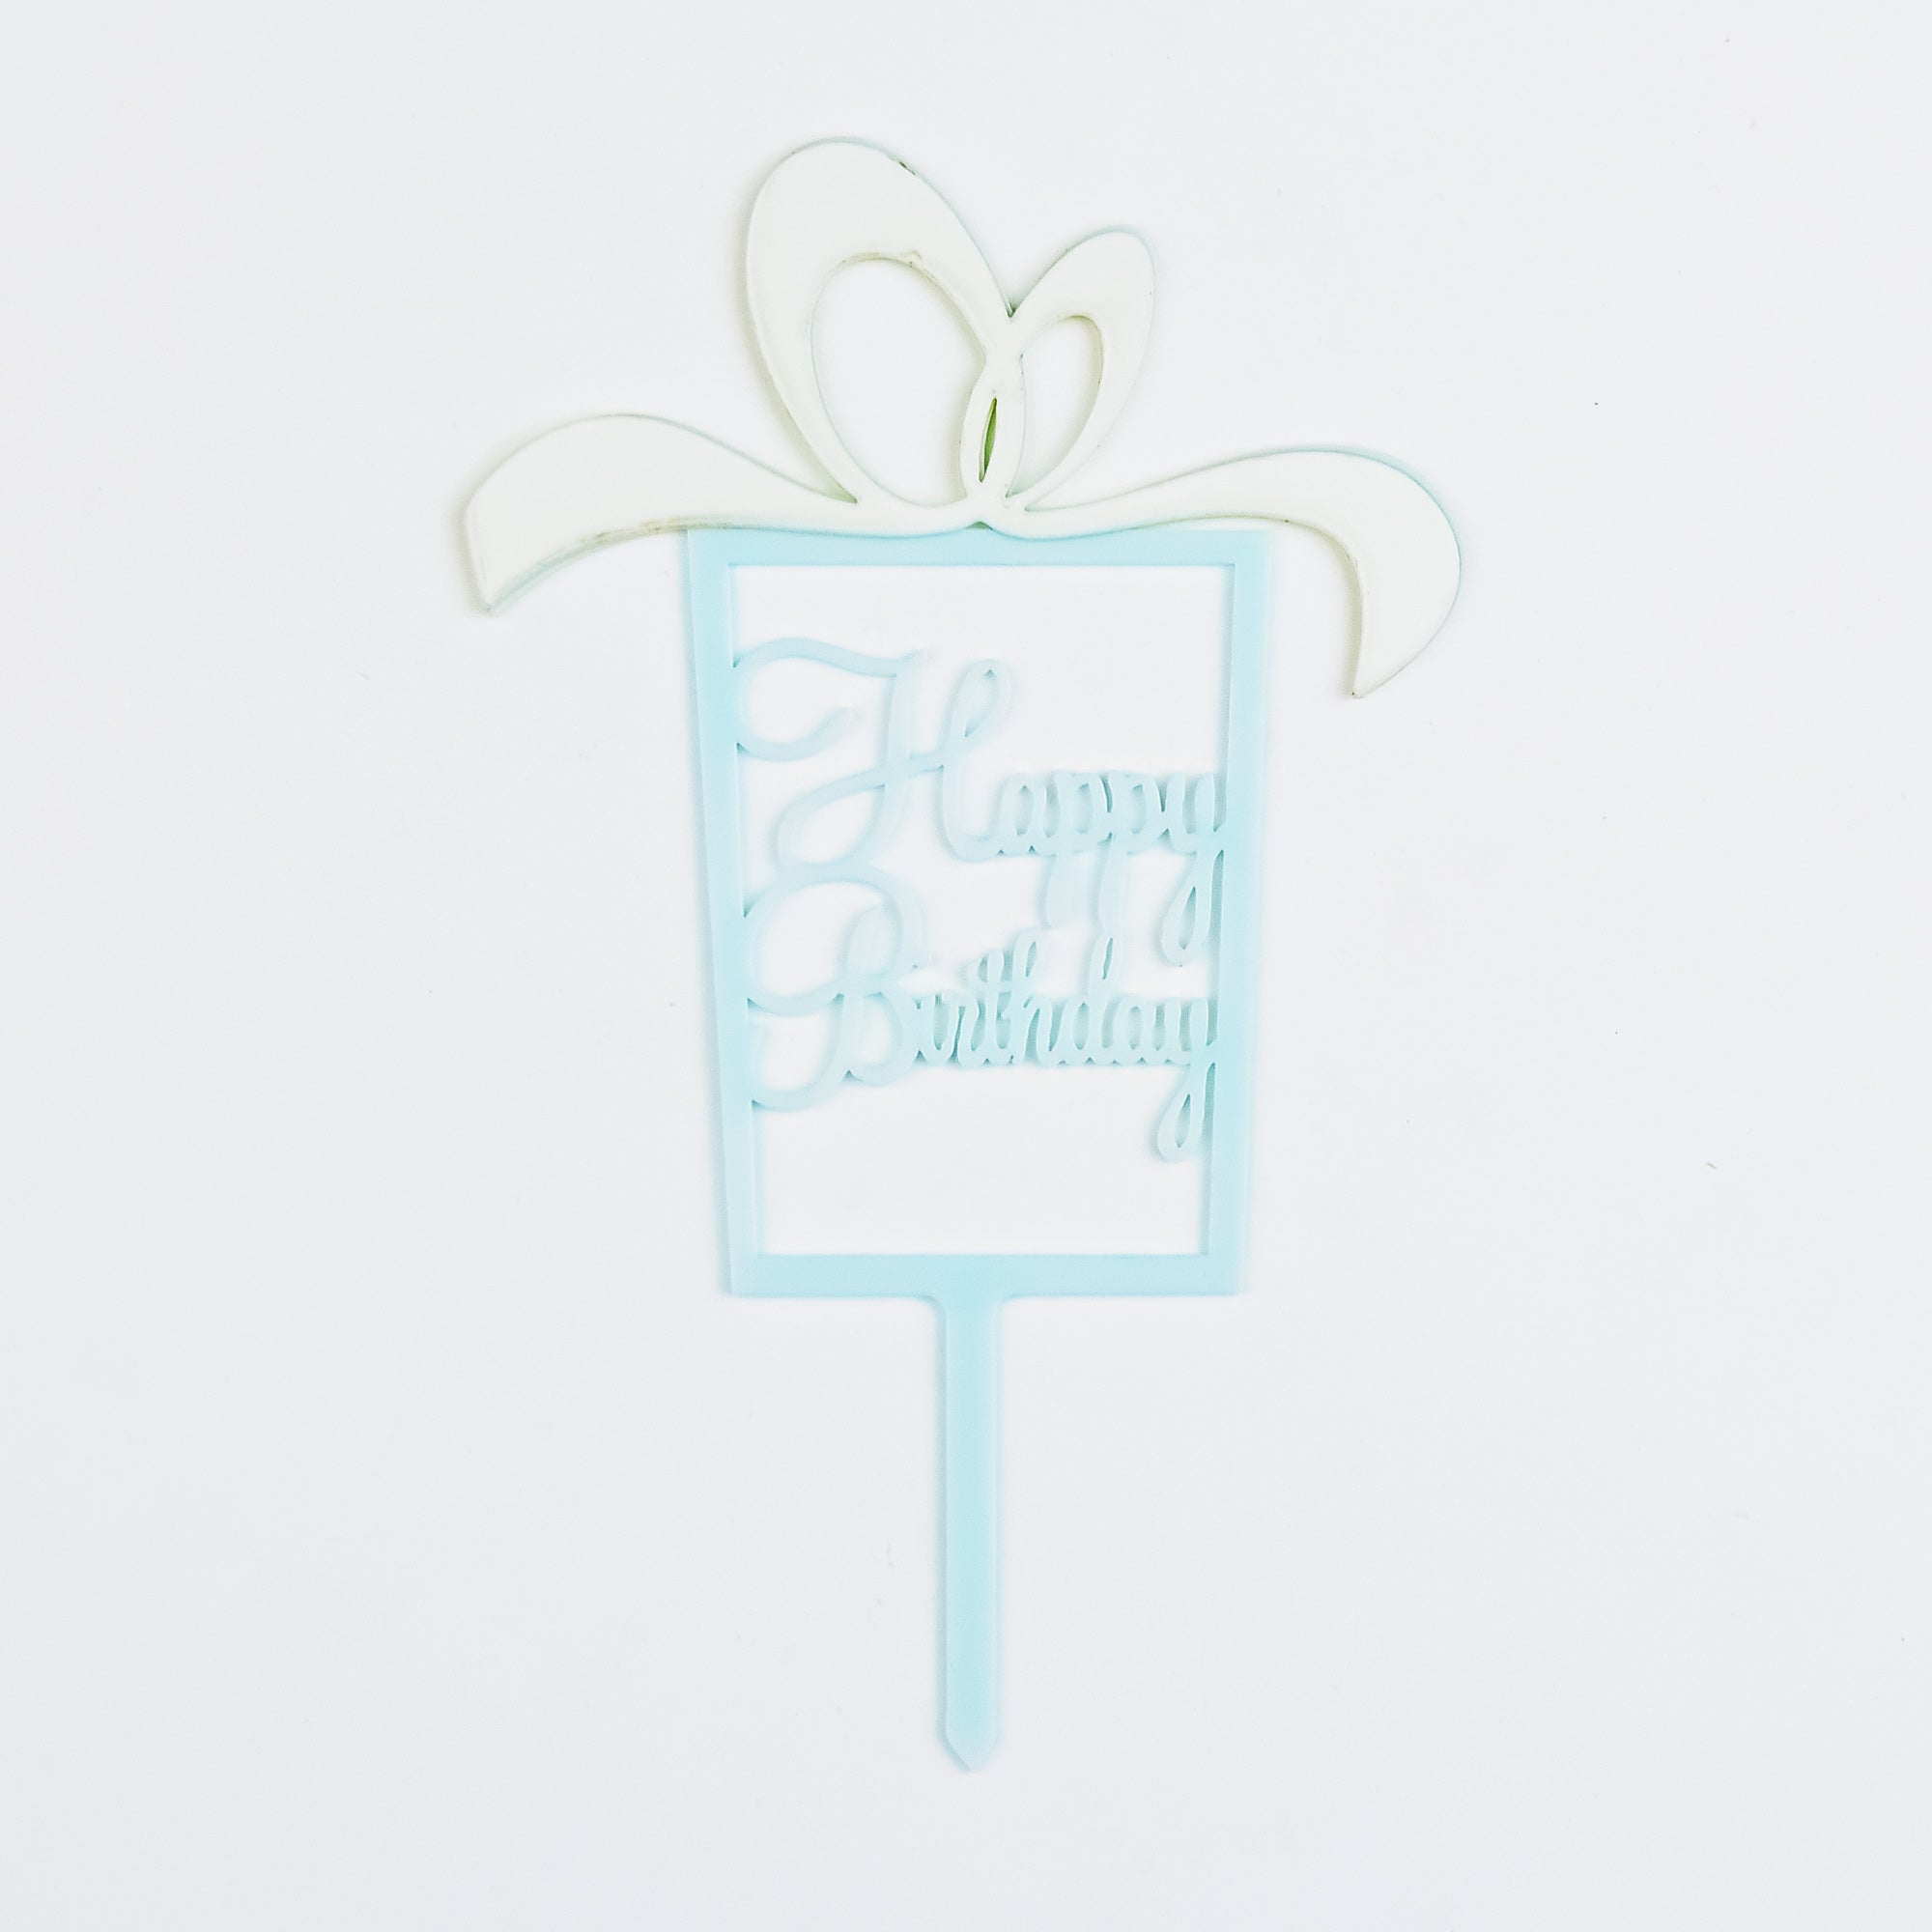 HAPPY BIRTHDAY Acrylic Cake Topper For Birthday Celebration